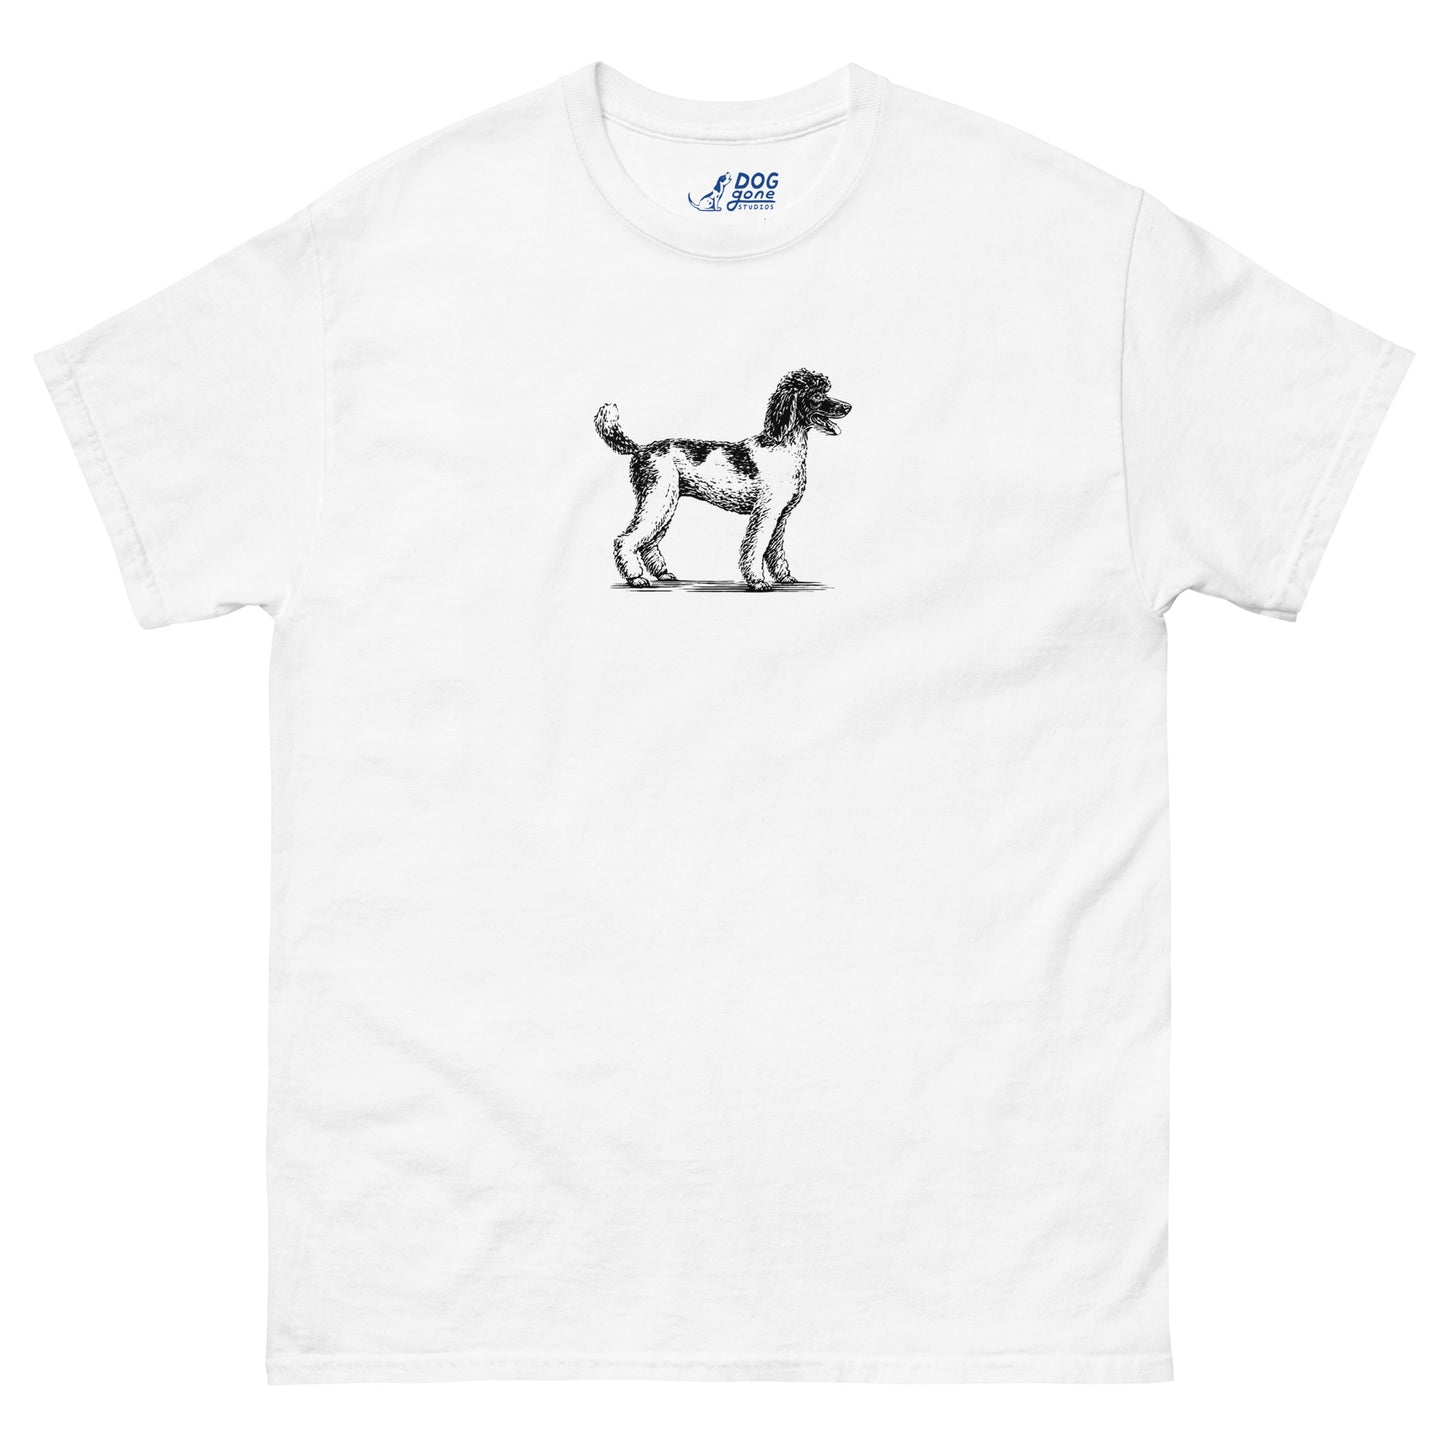 Poodle T-Shirt